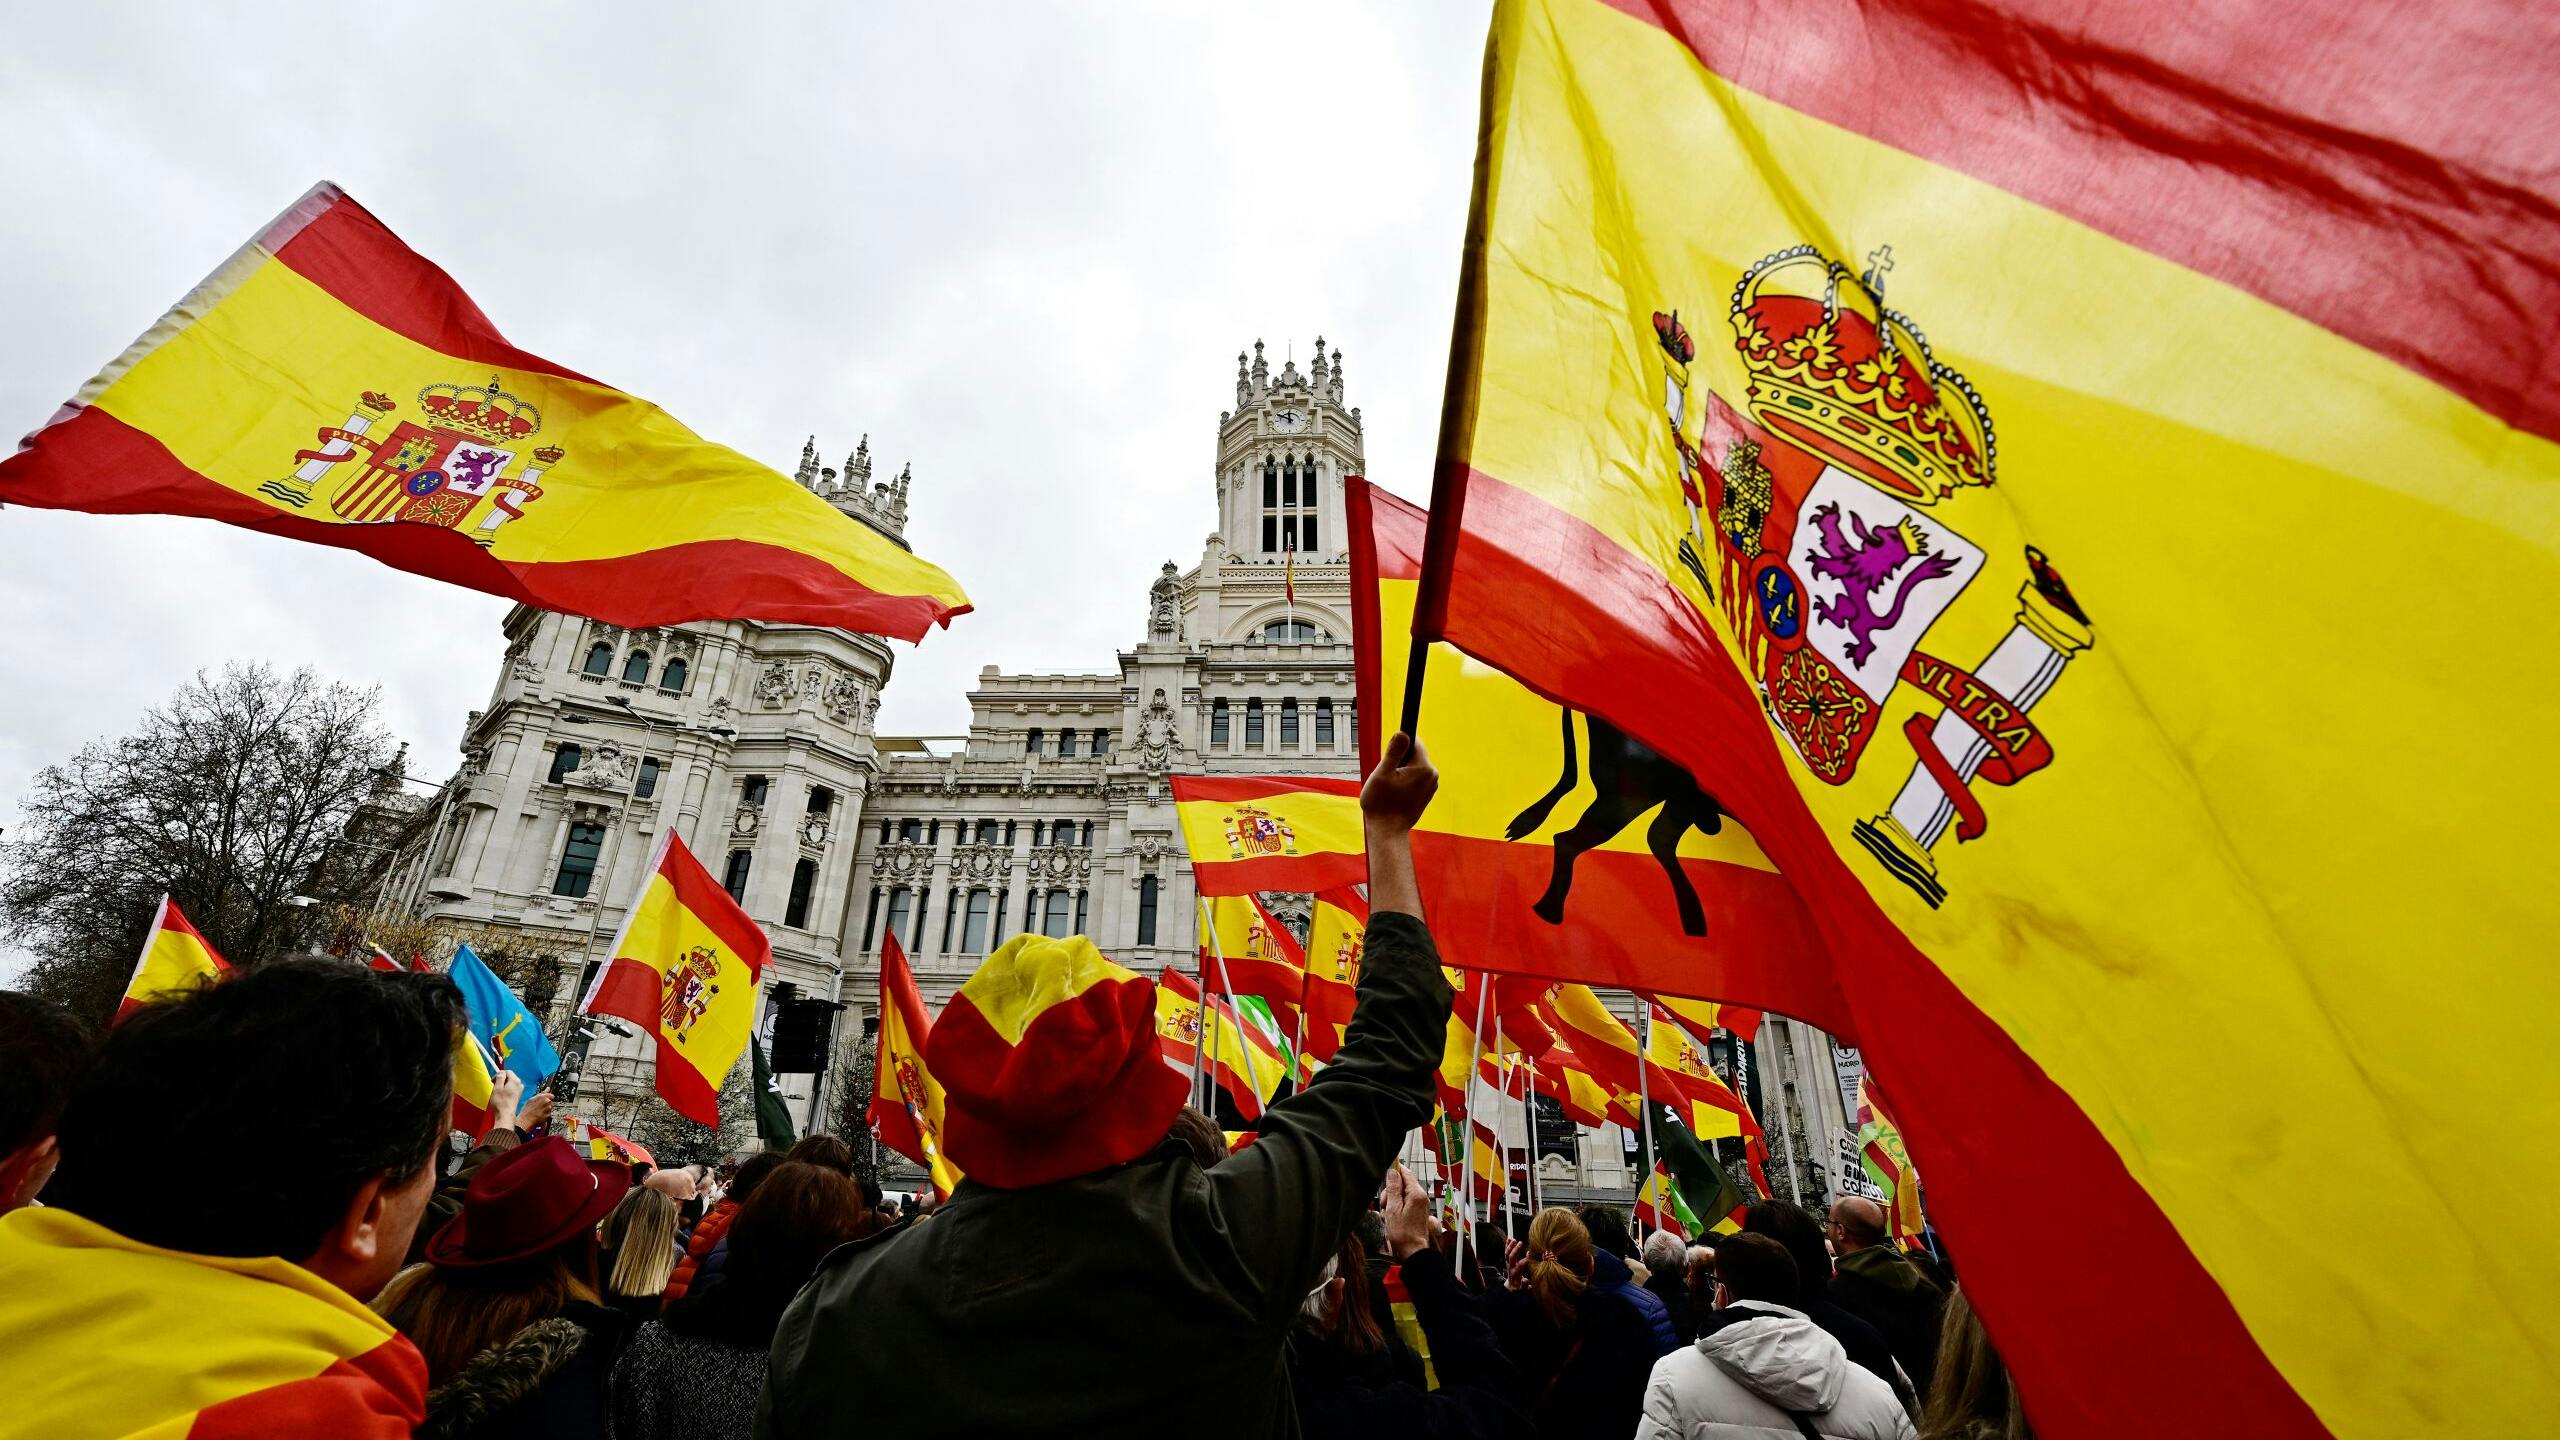 Een grote demonstratie afgelopen weekend in Madrid, georganiseerd door de extreem-rechtse partij Vox tegen de regering vanwege de toenemende prijsstijgingen. 